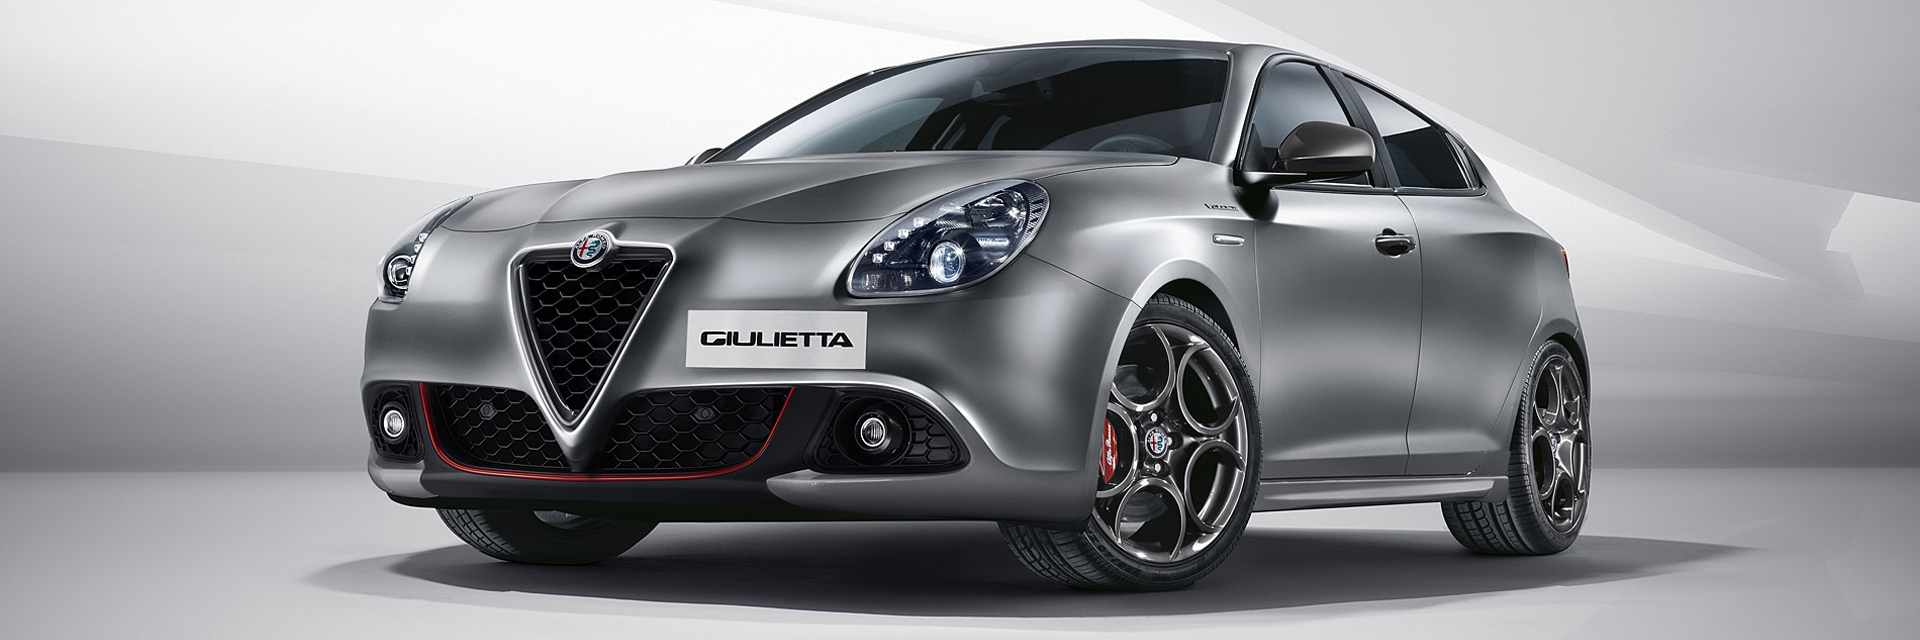 Alfa Romeo Giulietta - carros novos, carros km0, carros serviço, carros usados